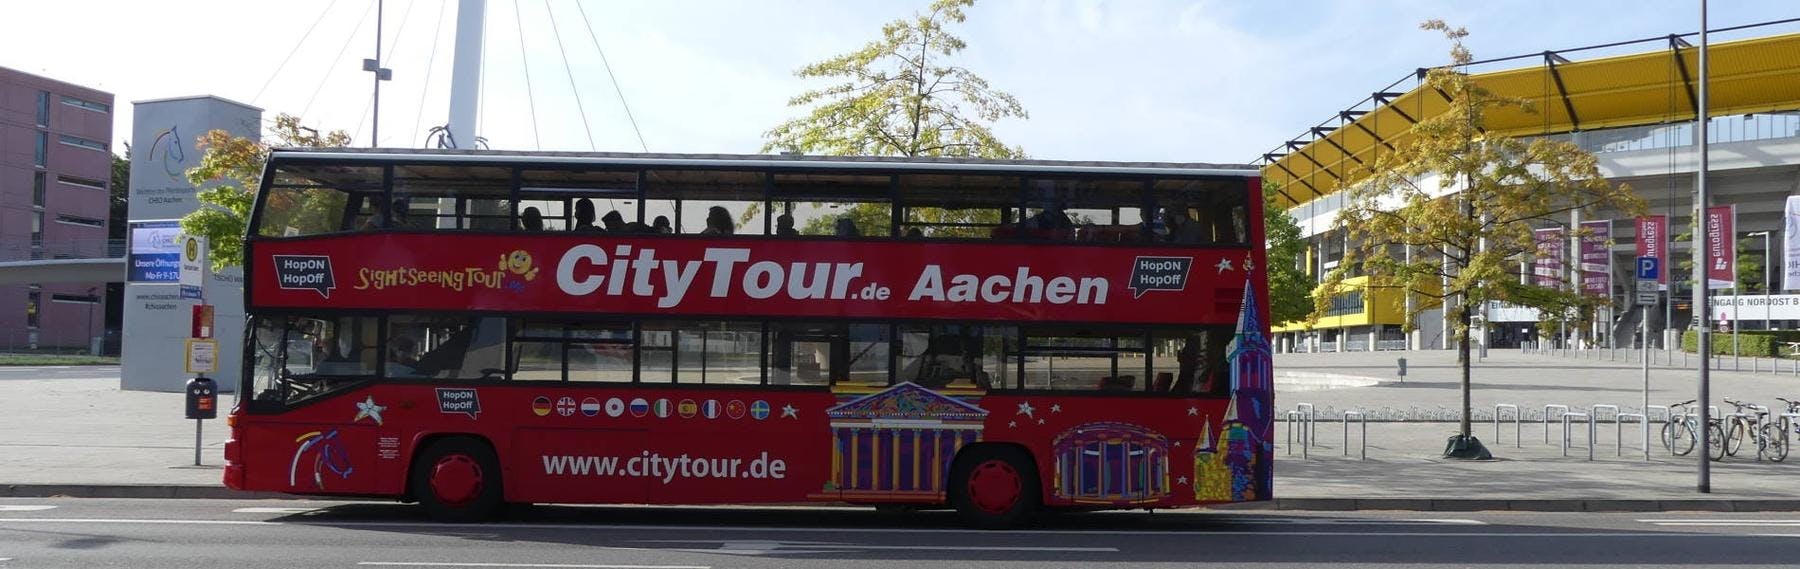 24-godzinna wycieczka autobusowa typu hop-on hop-off po Akwizgranie